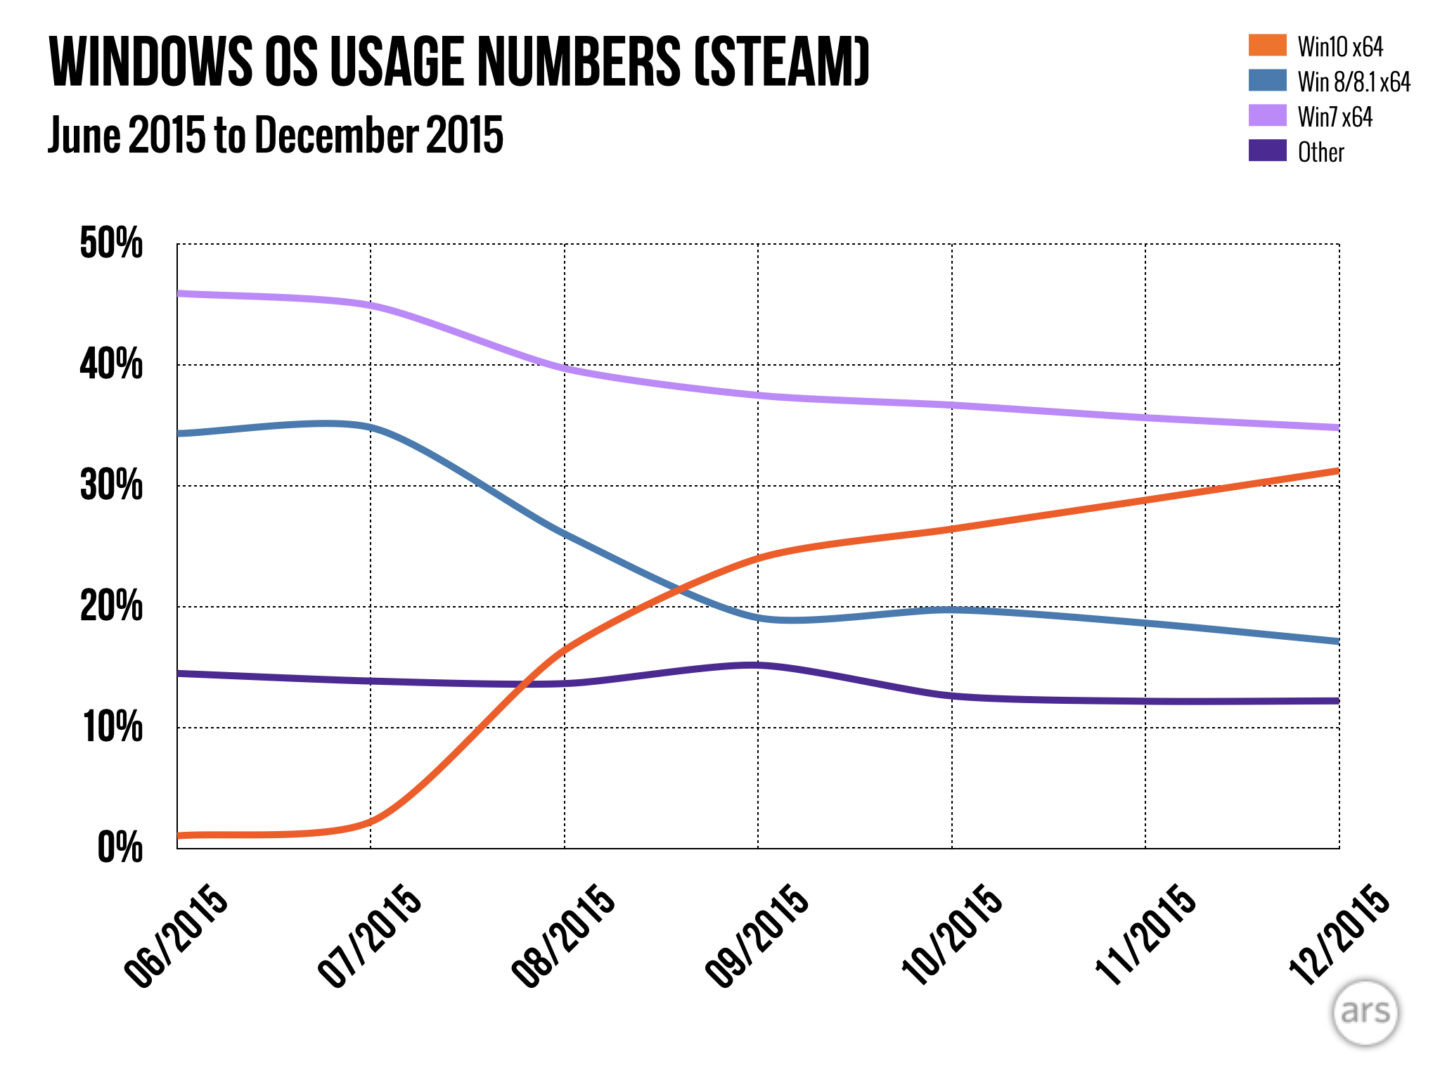 نرخ مهاجرت گیمرها به ویندوز ۱۰ به خاطر نارضایتی از ویندوز ۸ بسیار سریع بود